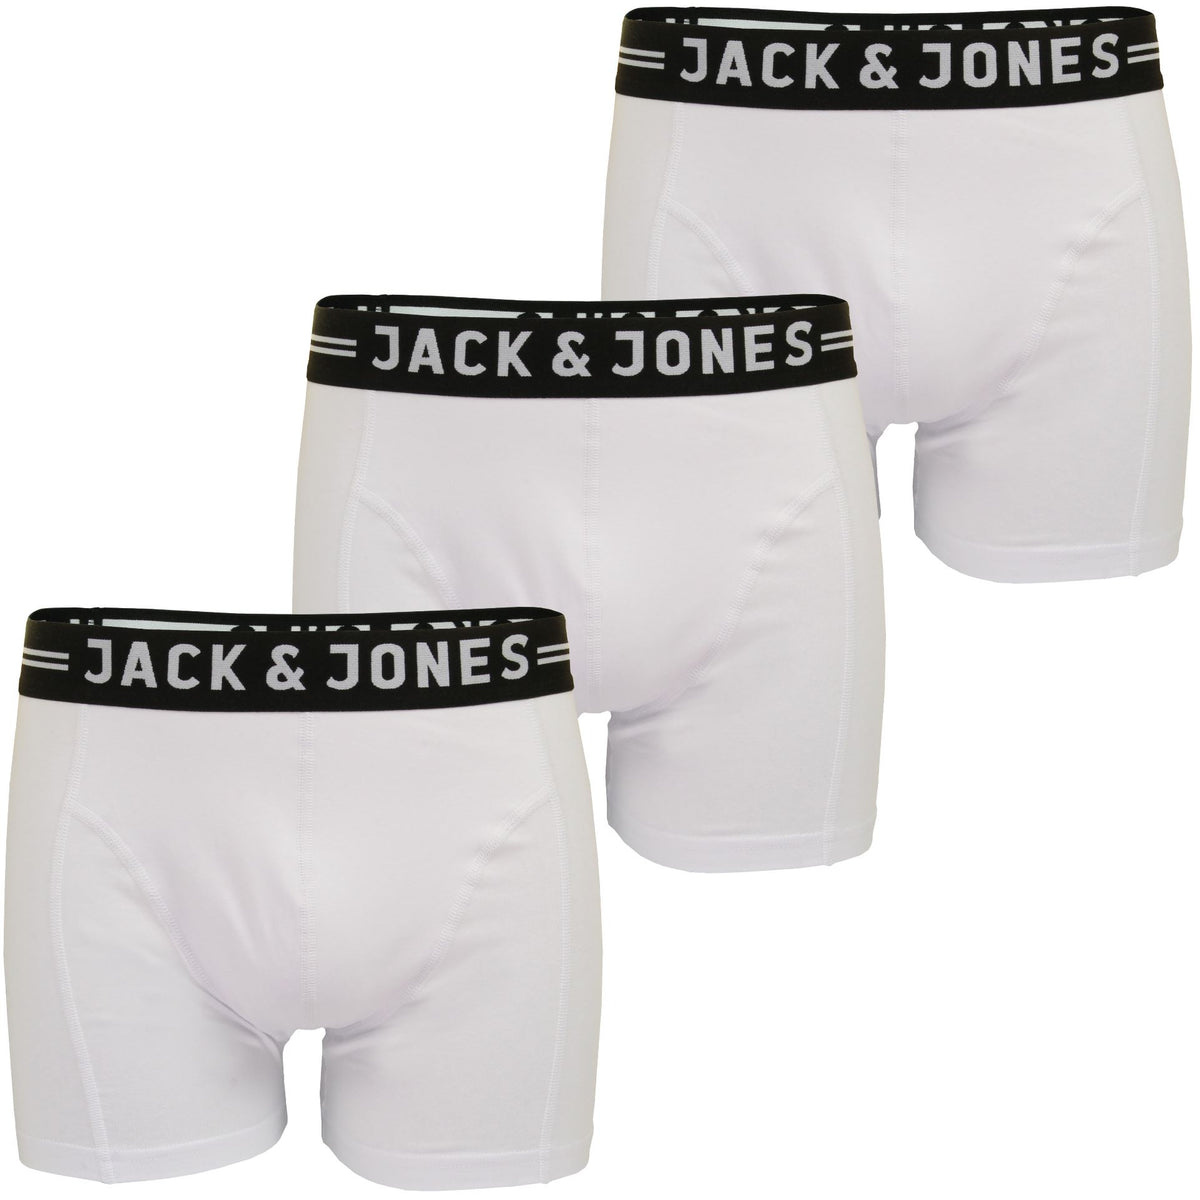 Jack & Jones 'Sense' Mens Boxer Shorts/ Trunks (3-Pack), 01, 12081832, White